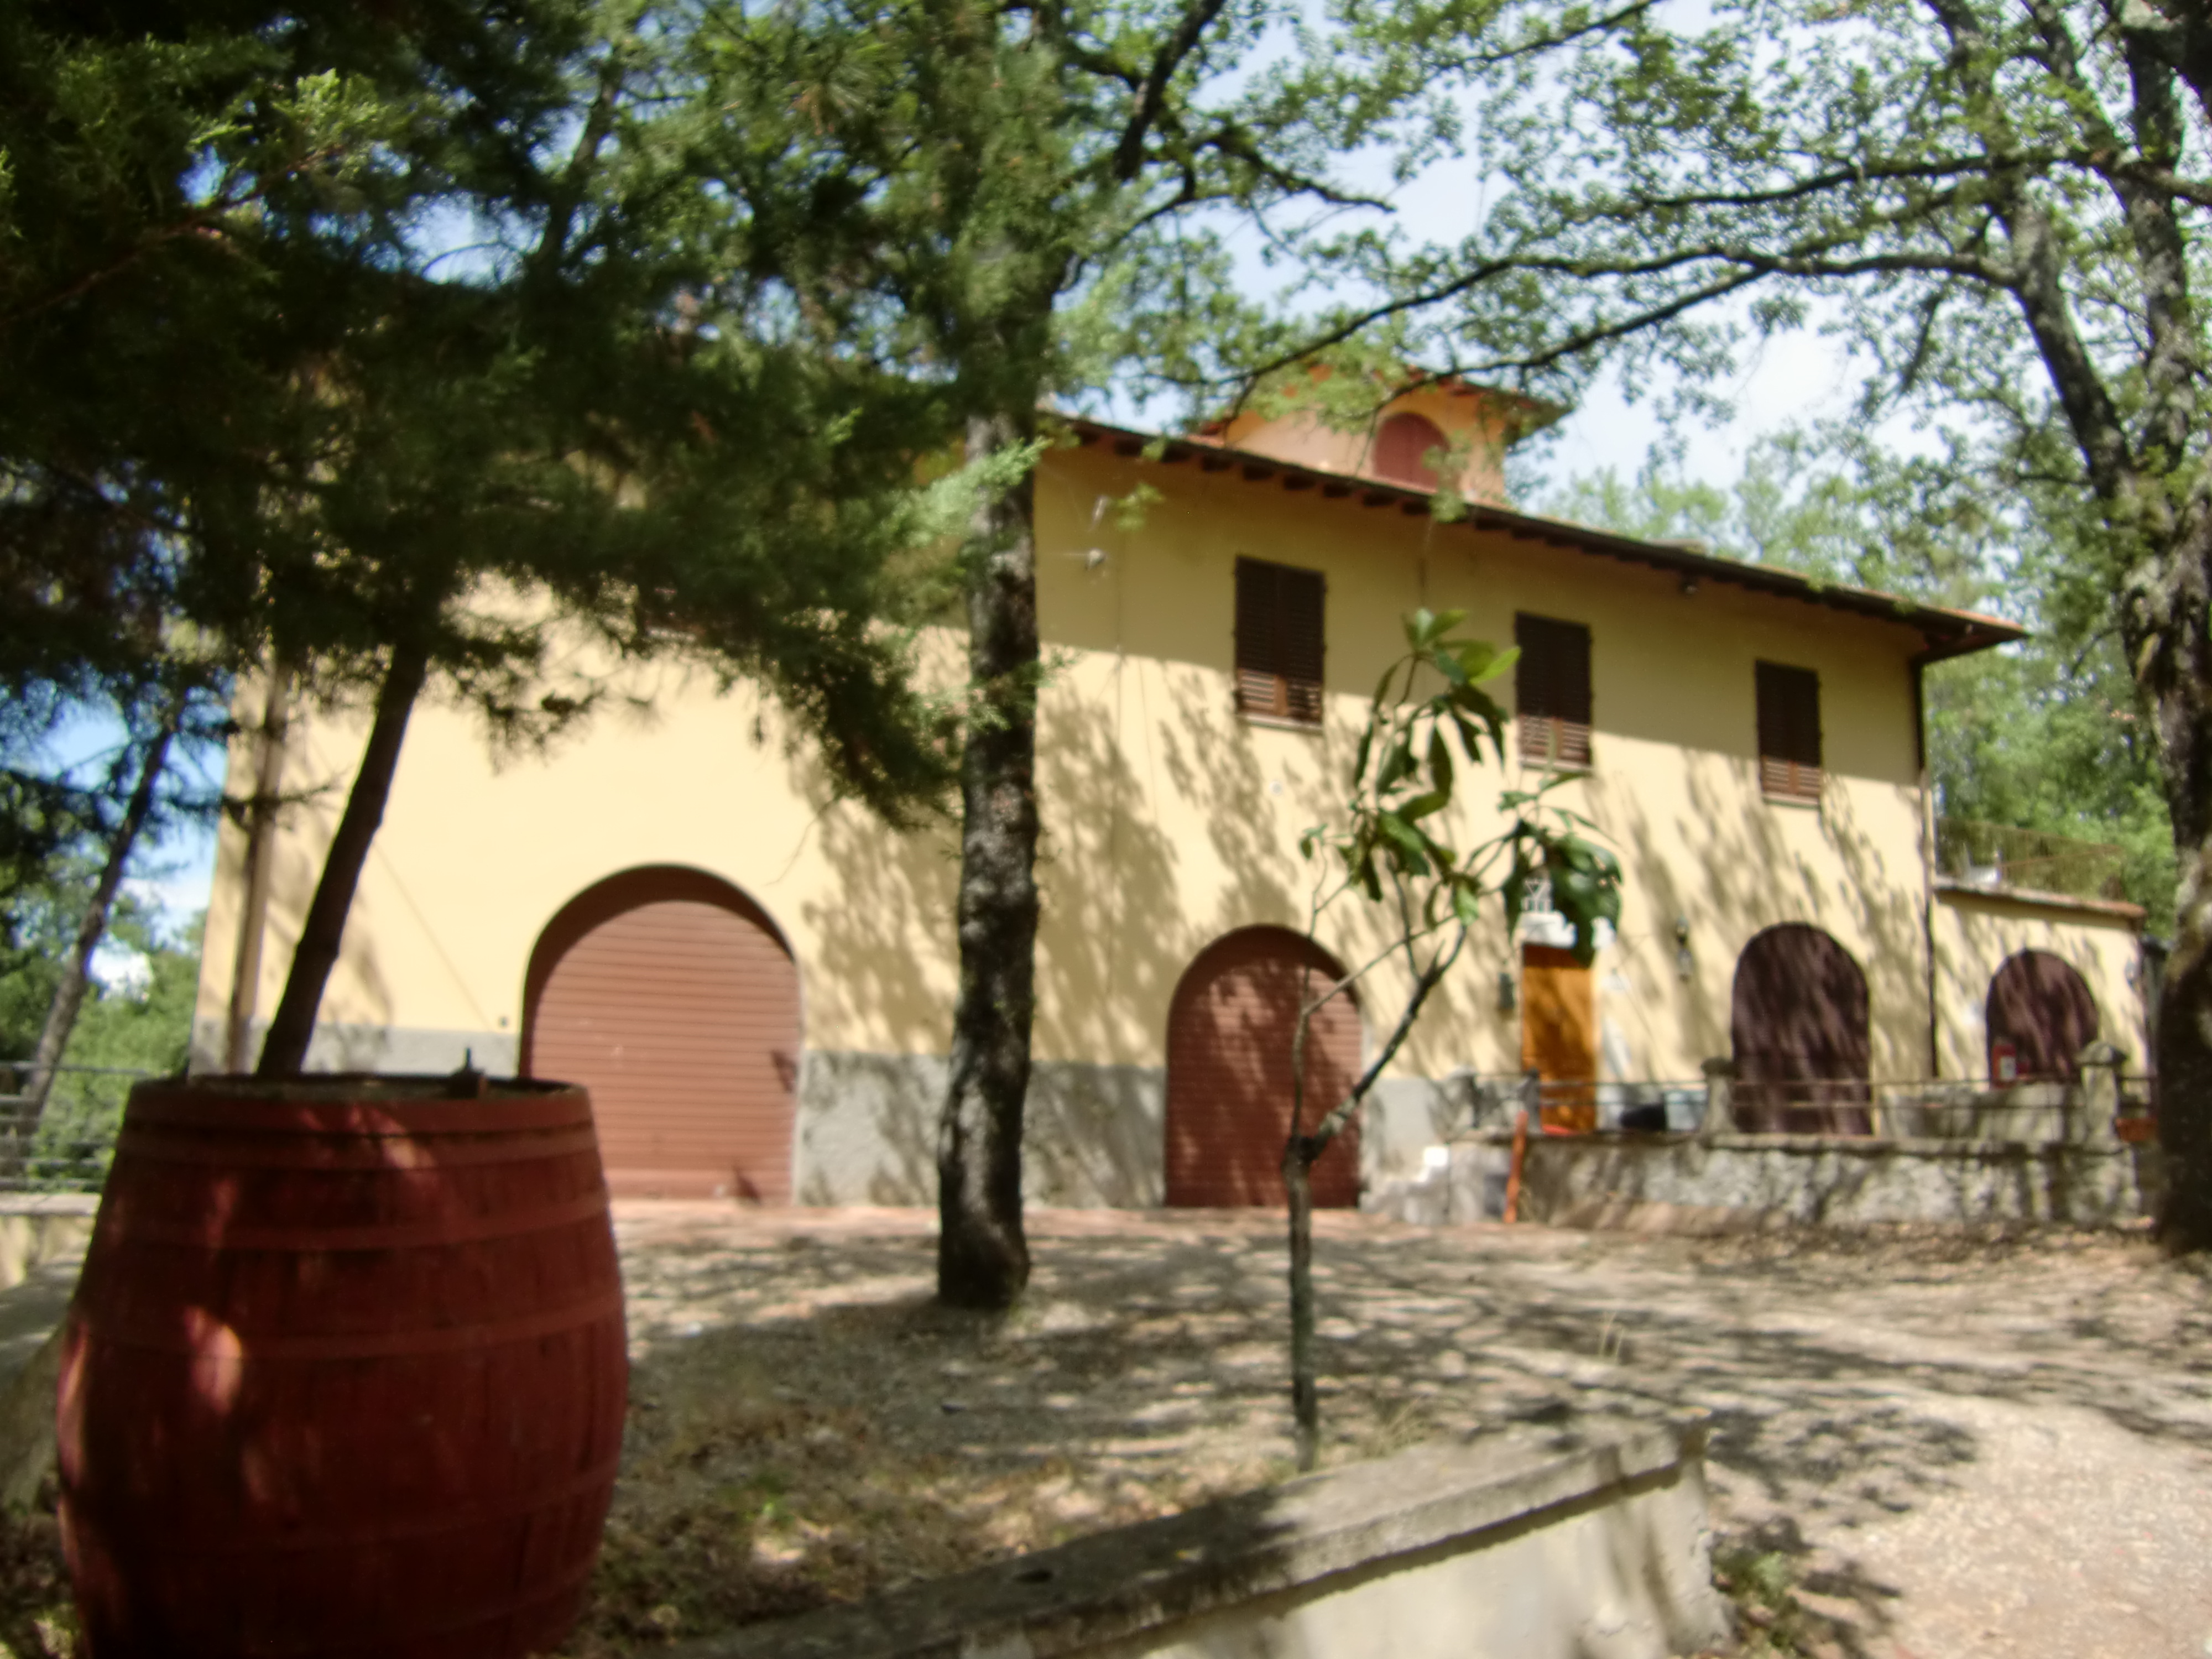 MERCATALE Campoli villa indipendente